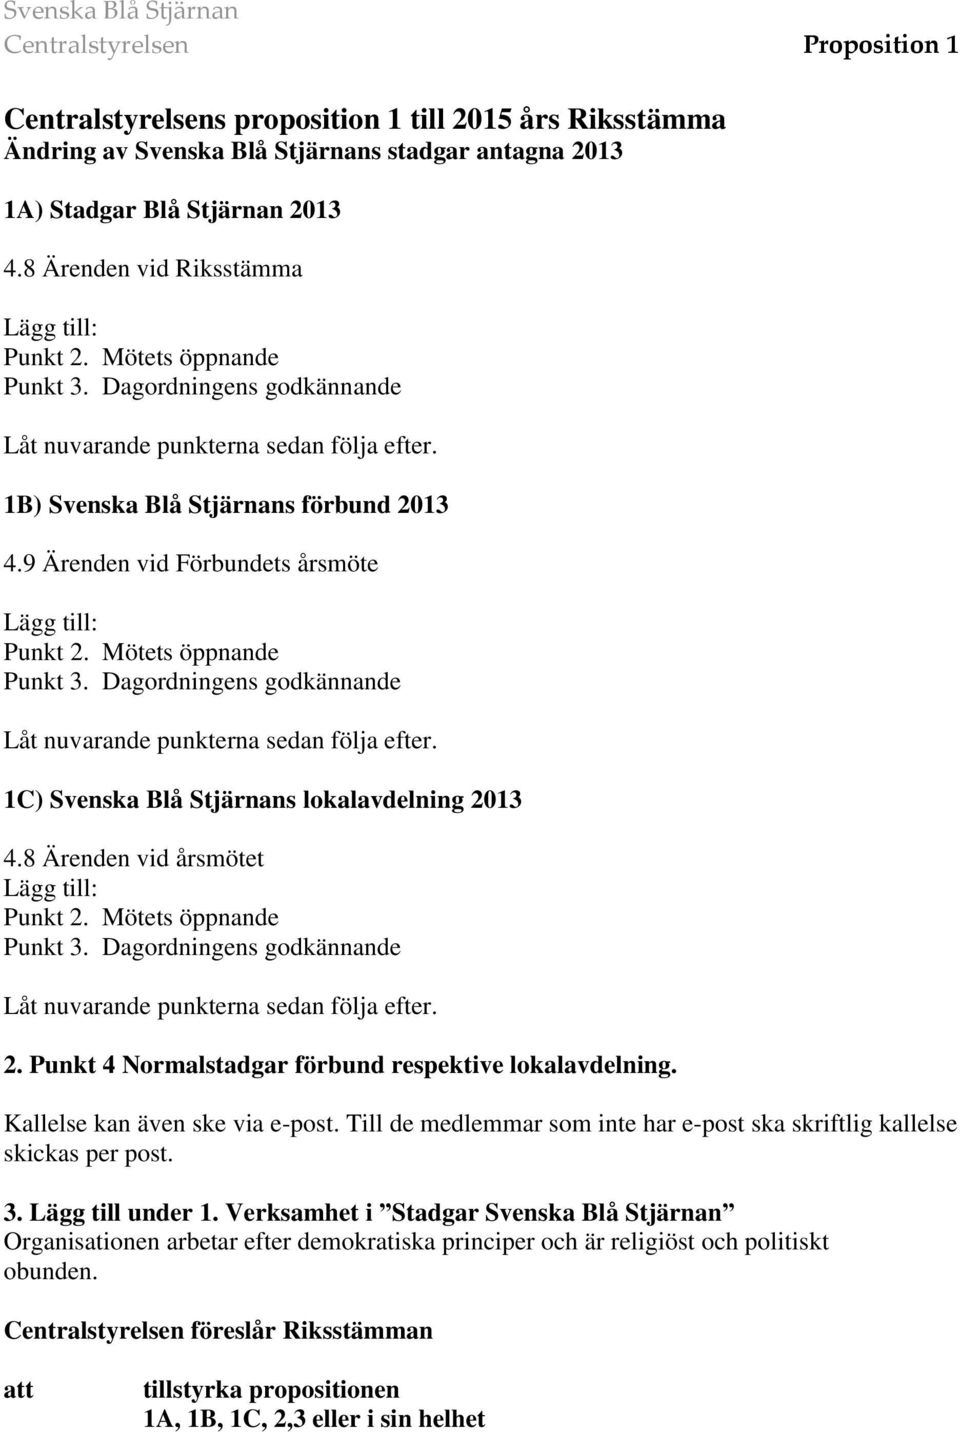 9 Ärenden vid Förbundets årsmöte Lägg till: Punkt 2. Mötets öppnande Punkt 3. Dagordningens godkännande Låt nuvarande punkterna sedan följa efter. 1C) Svenska Blå Stjärnans lokalavdelning 2013 4.